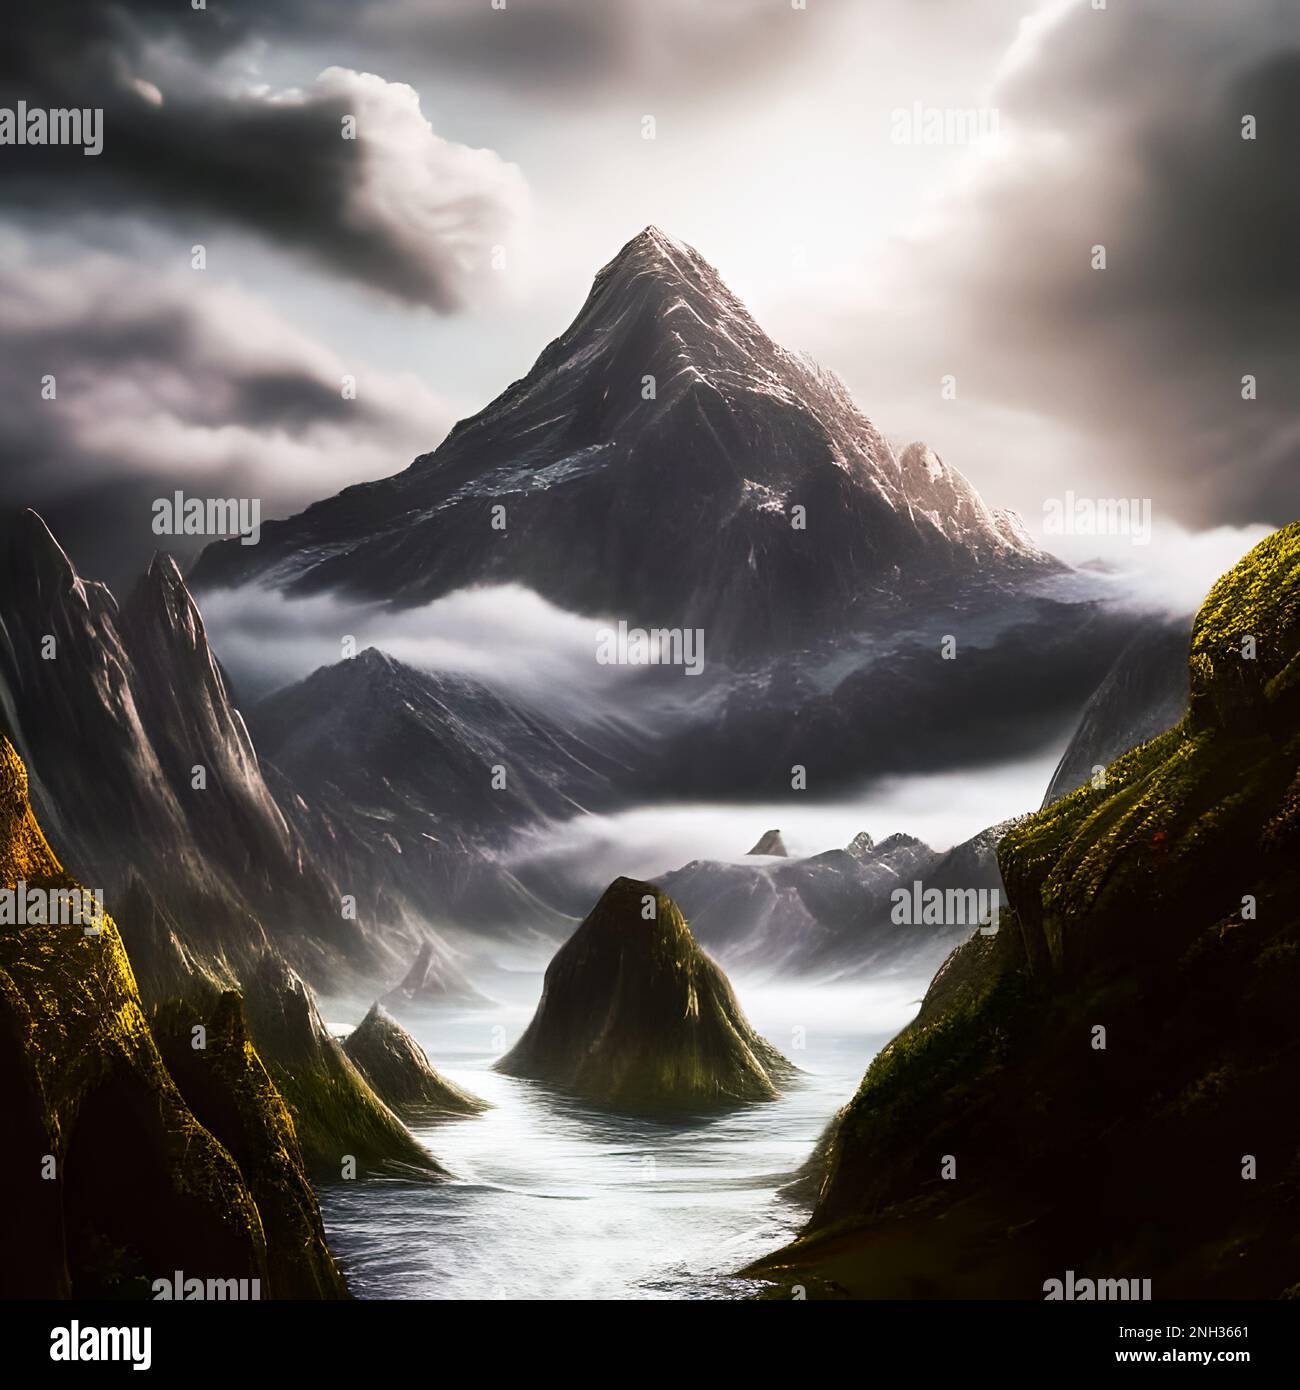 Majestic mountain range depiction. Edited AI generated image Stock Photo